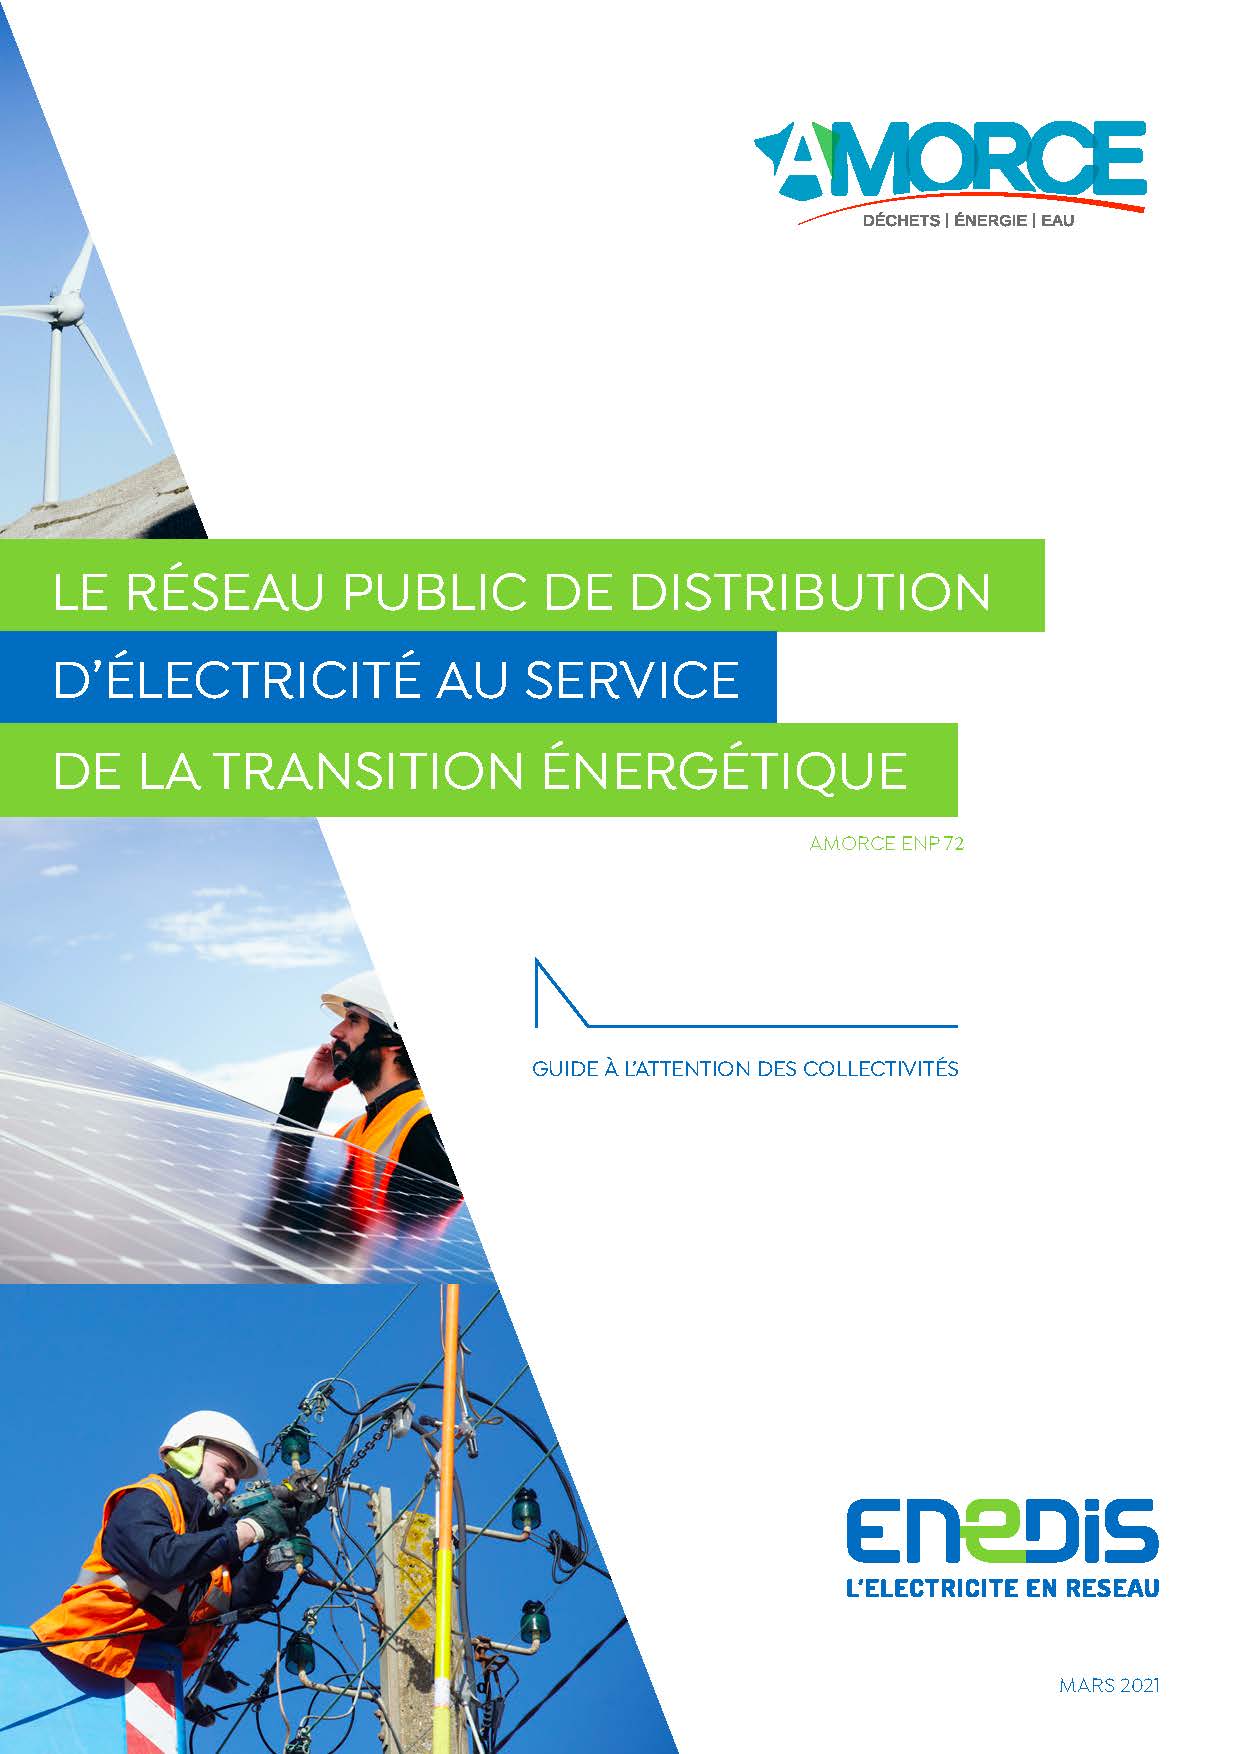 Le réseau public de distribution d’électricité au service de la transition énergétique